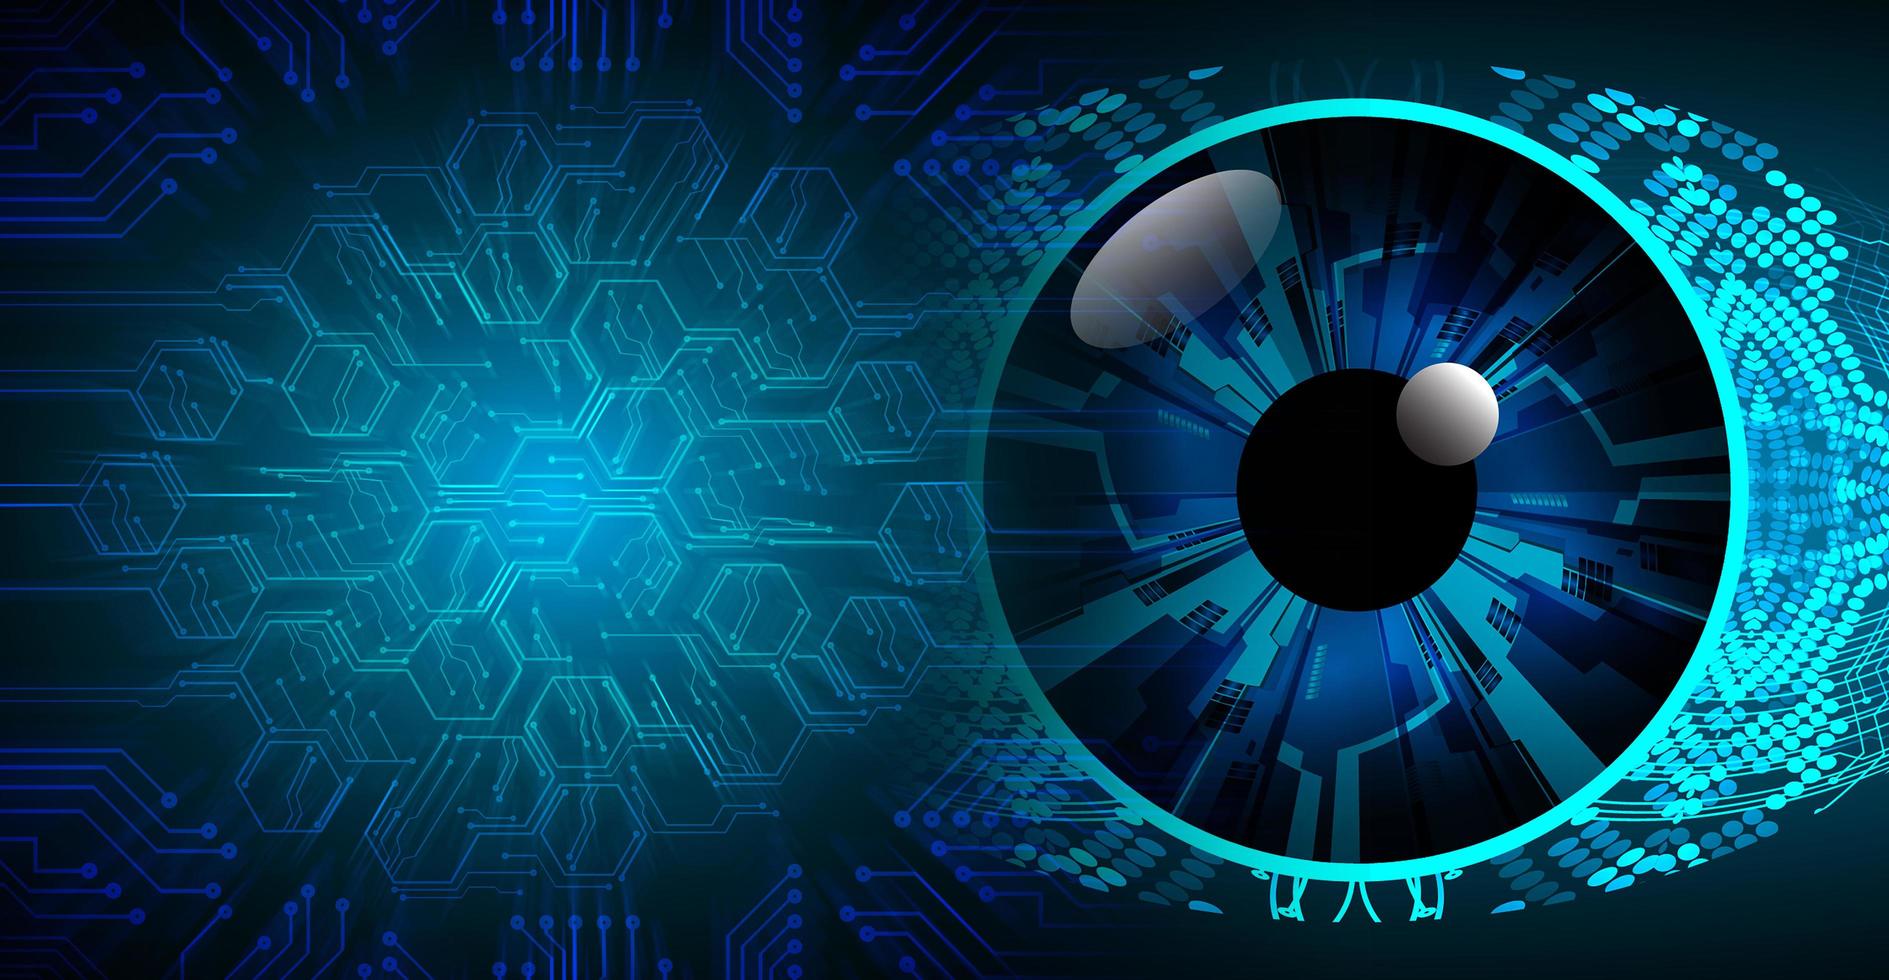 Hintergrund des zukünftigen Technologiekonzepts der Augen-Cyber-Schaltung foto